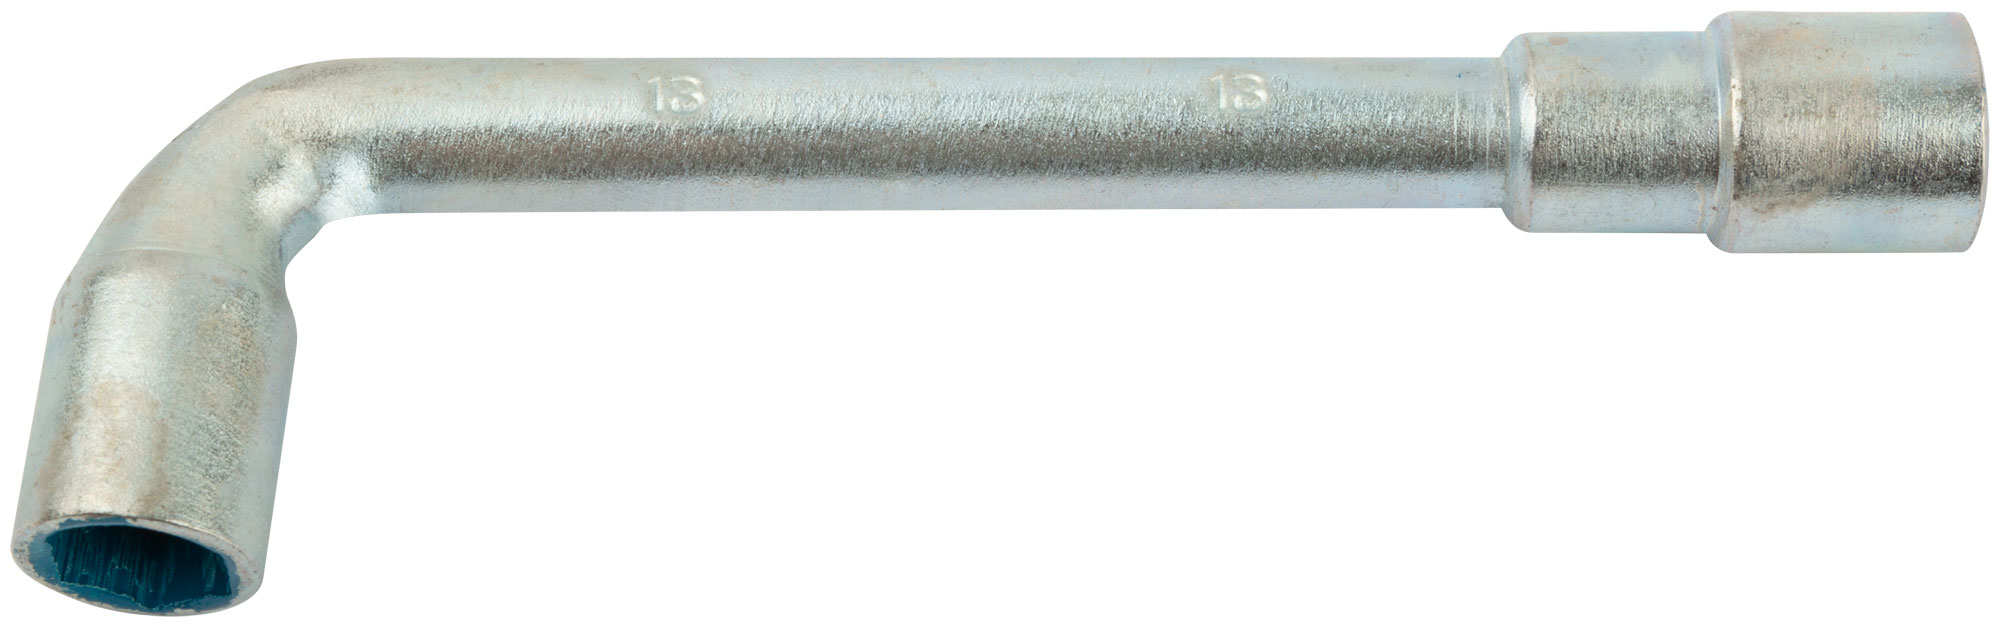 Ключ торцевой L-образный 13 мм. FIT 63013 г образный торцевой ключ kendo